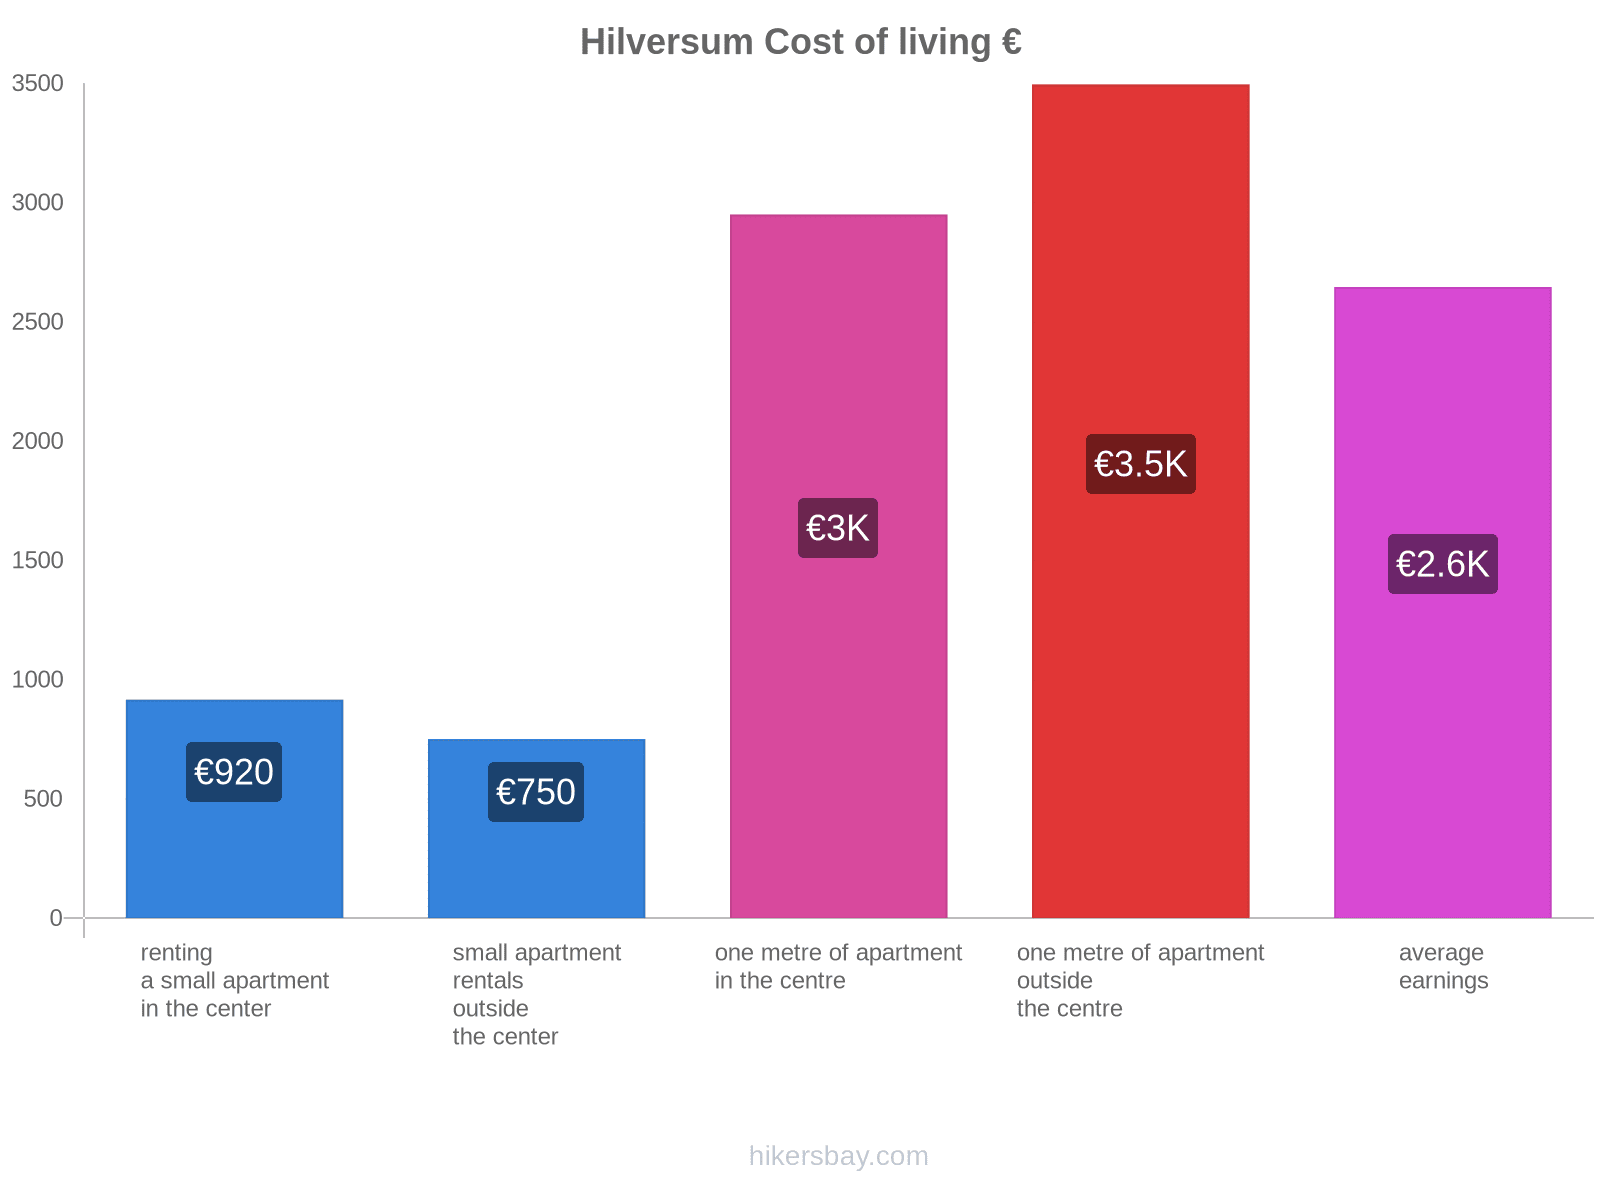 Hilversum cost of living hikersbay.com